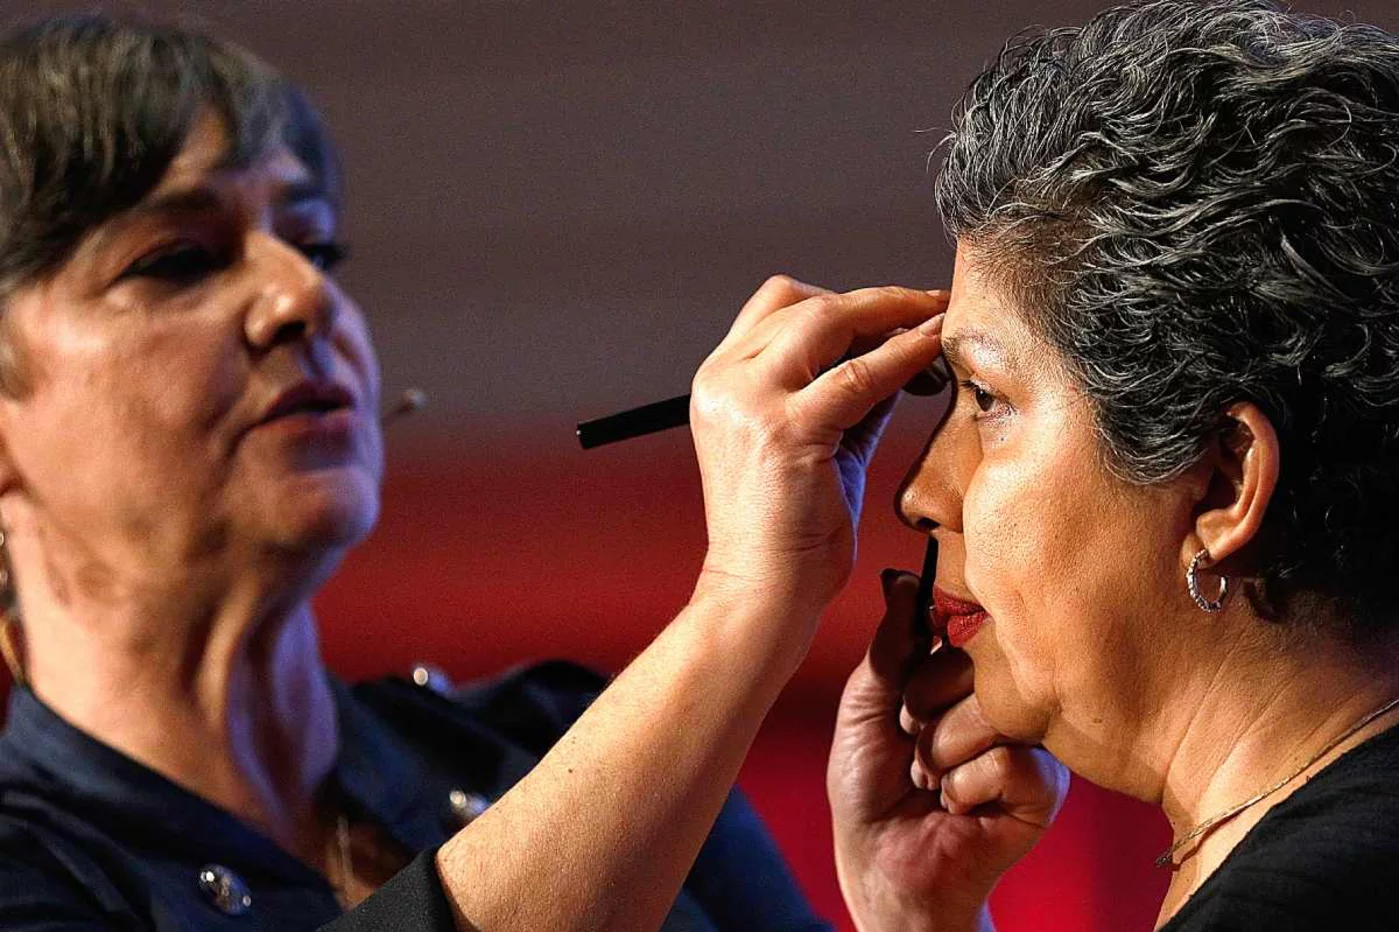 La maquilladora profesional y voluntaria de la Fundación Stanpa, Charo Sánchez, dibujando una ceja sobre el rostro de Adriana Range. La clave es que quede lo más natural posible.  Foto: SERGIO ENRÍQUEZ